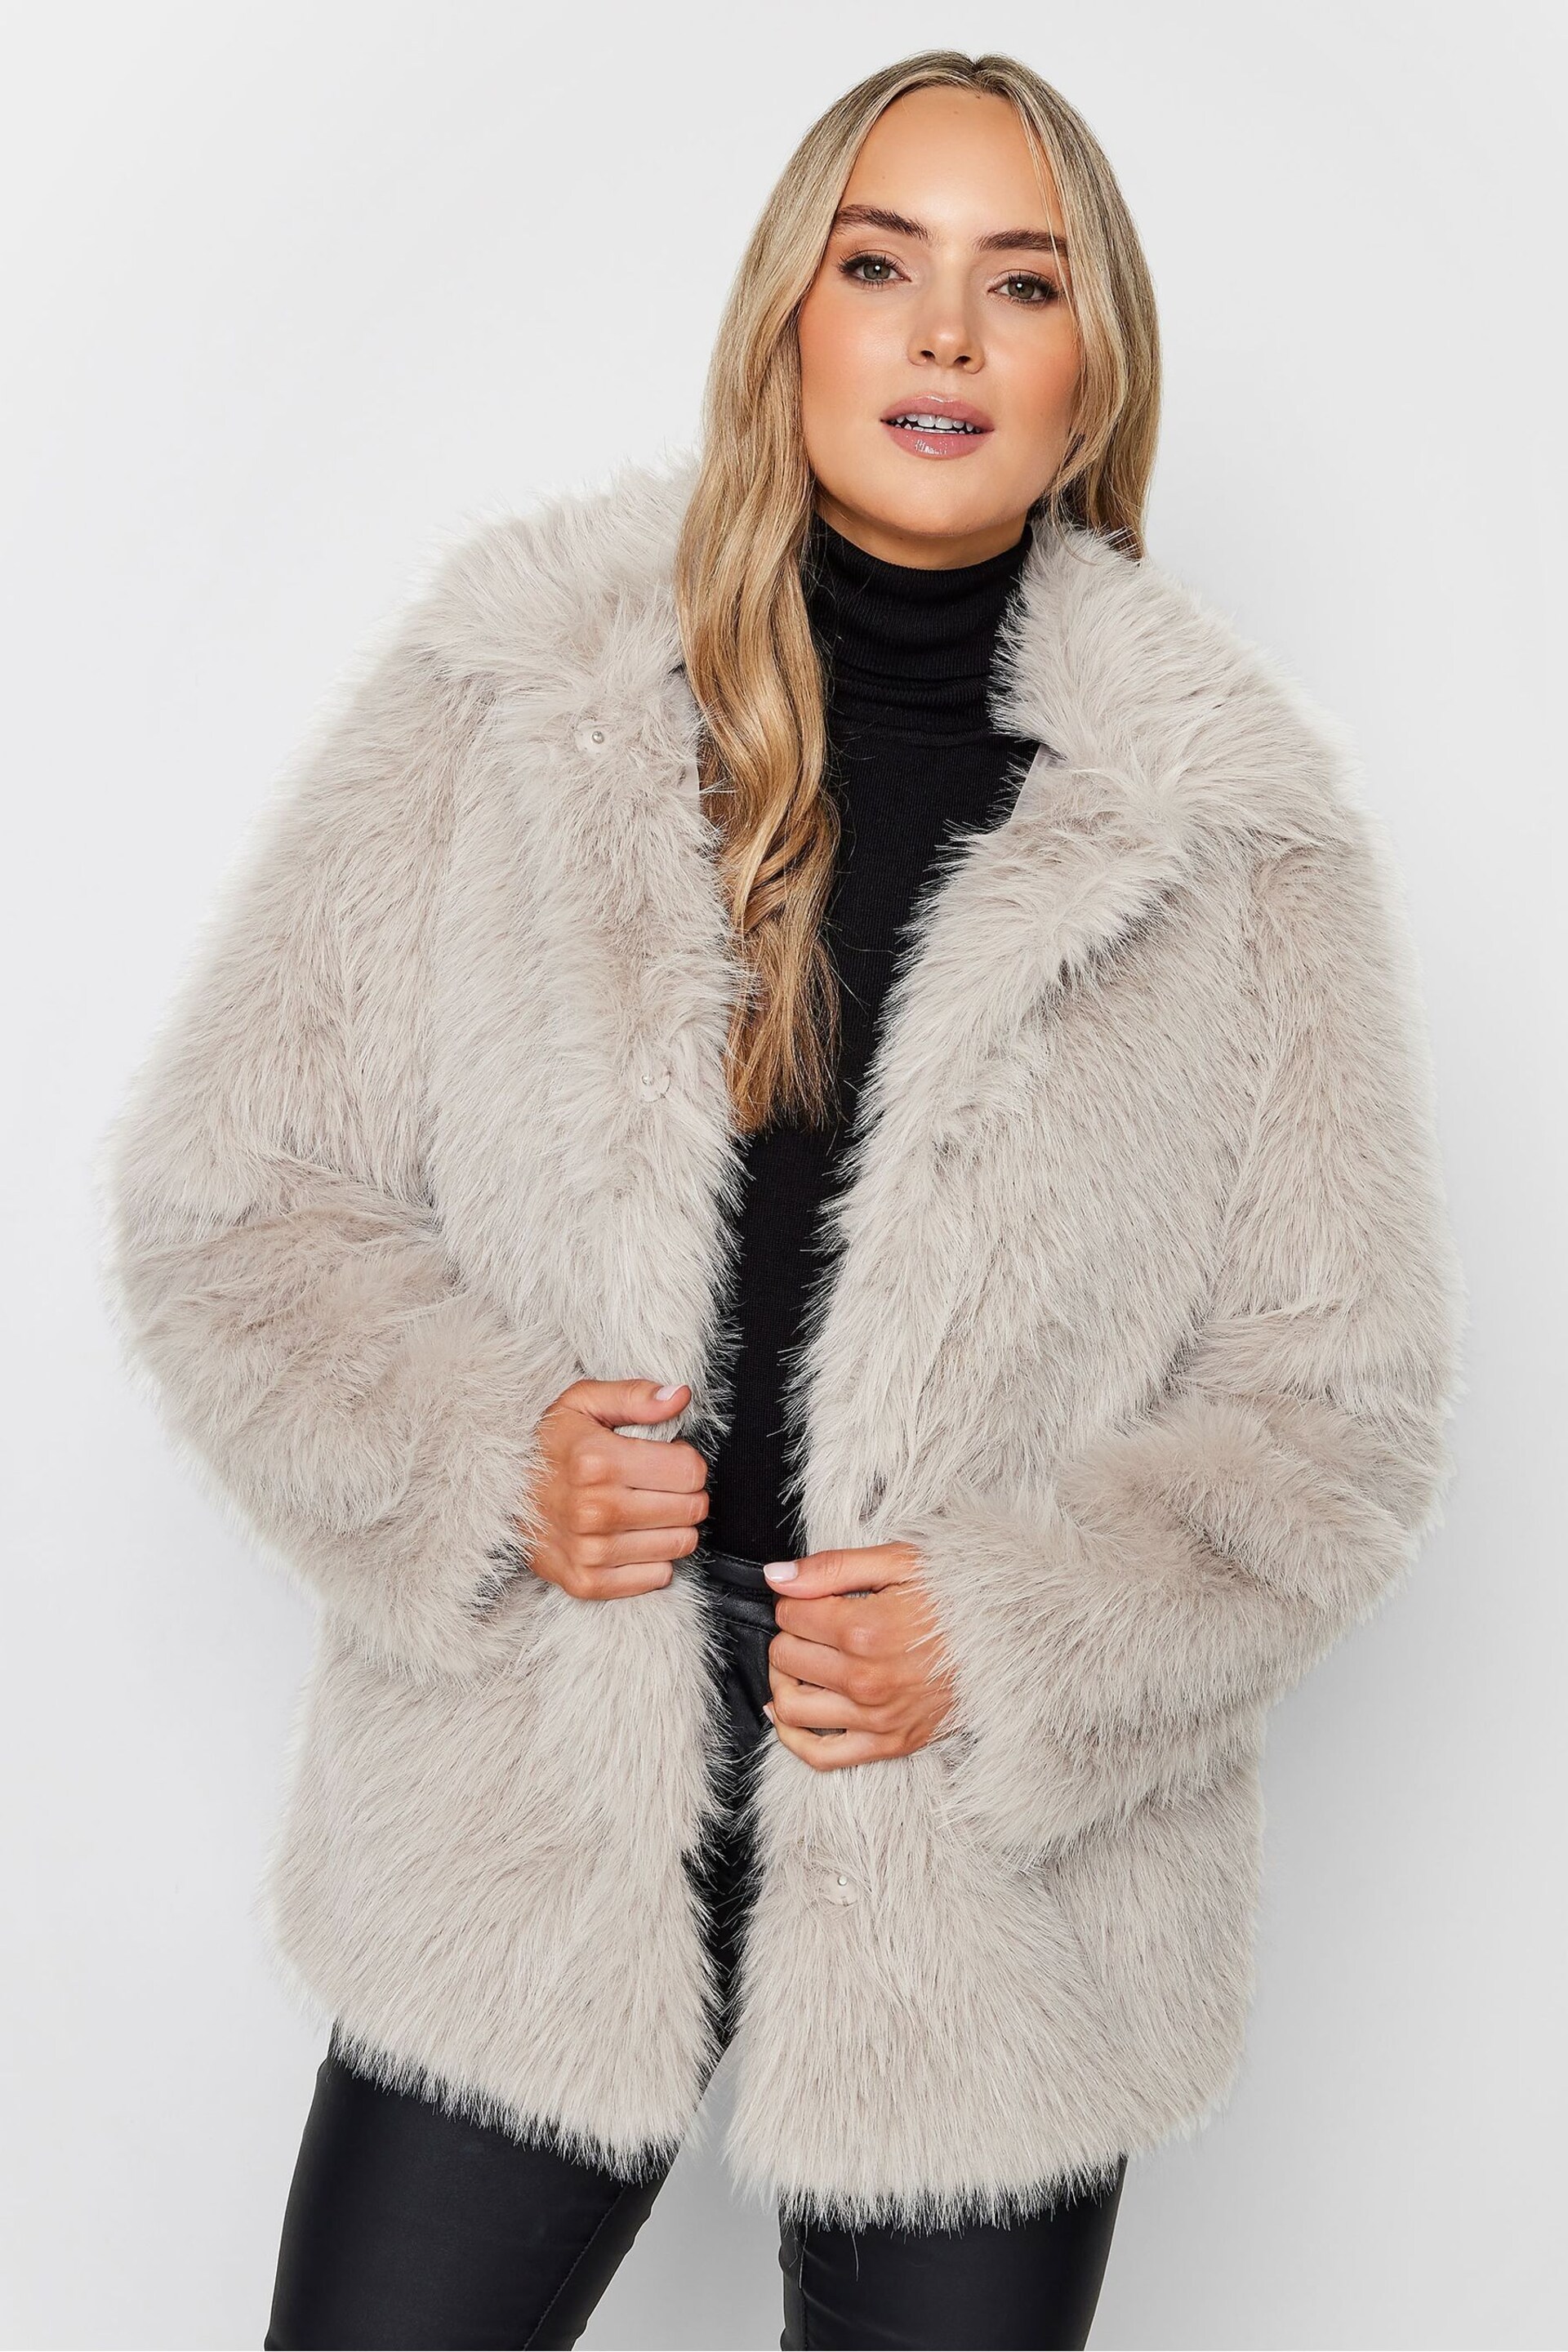 Long Tall Sally Natural Long Faux Fur Coats - Image 1 of 5